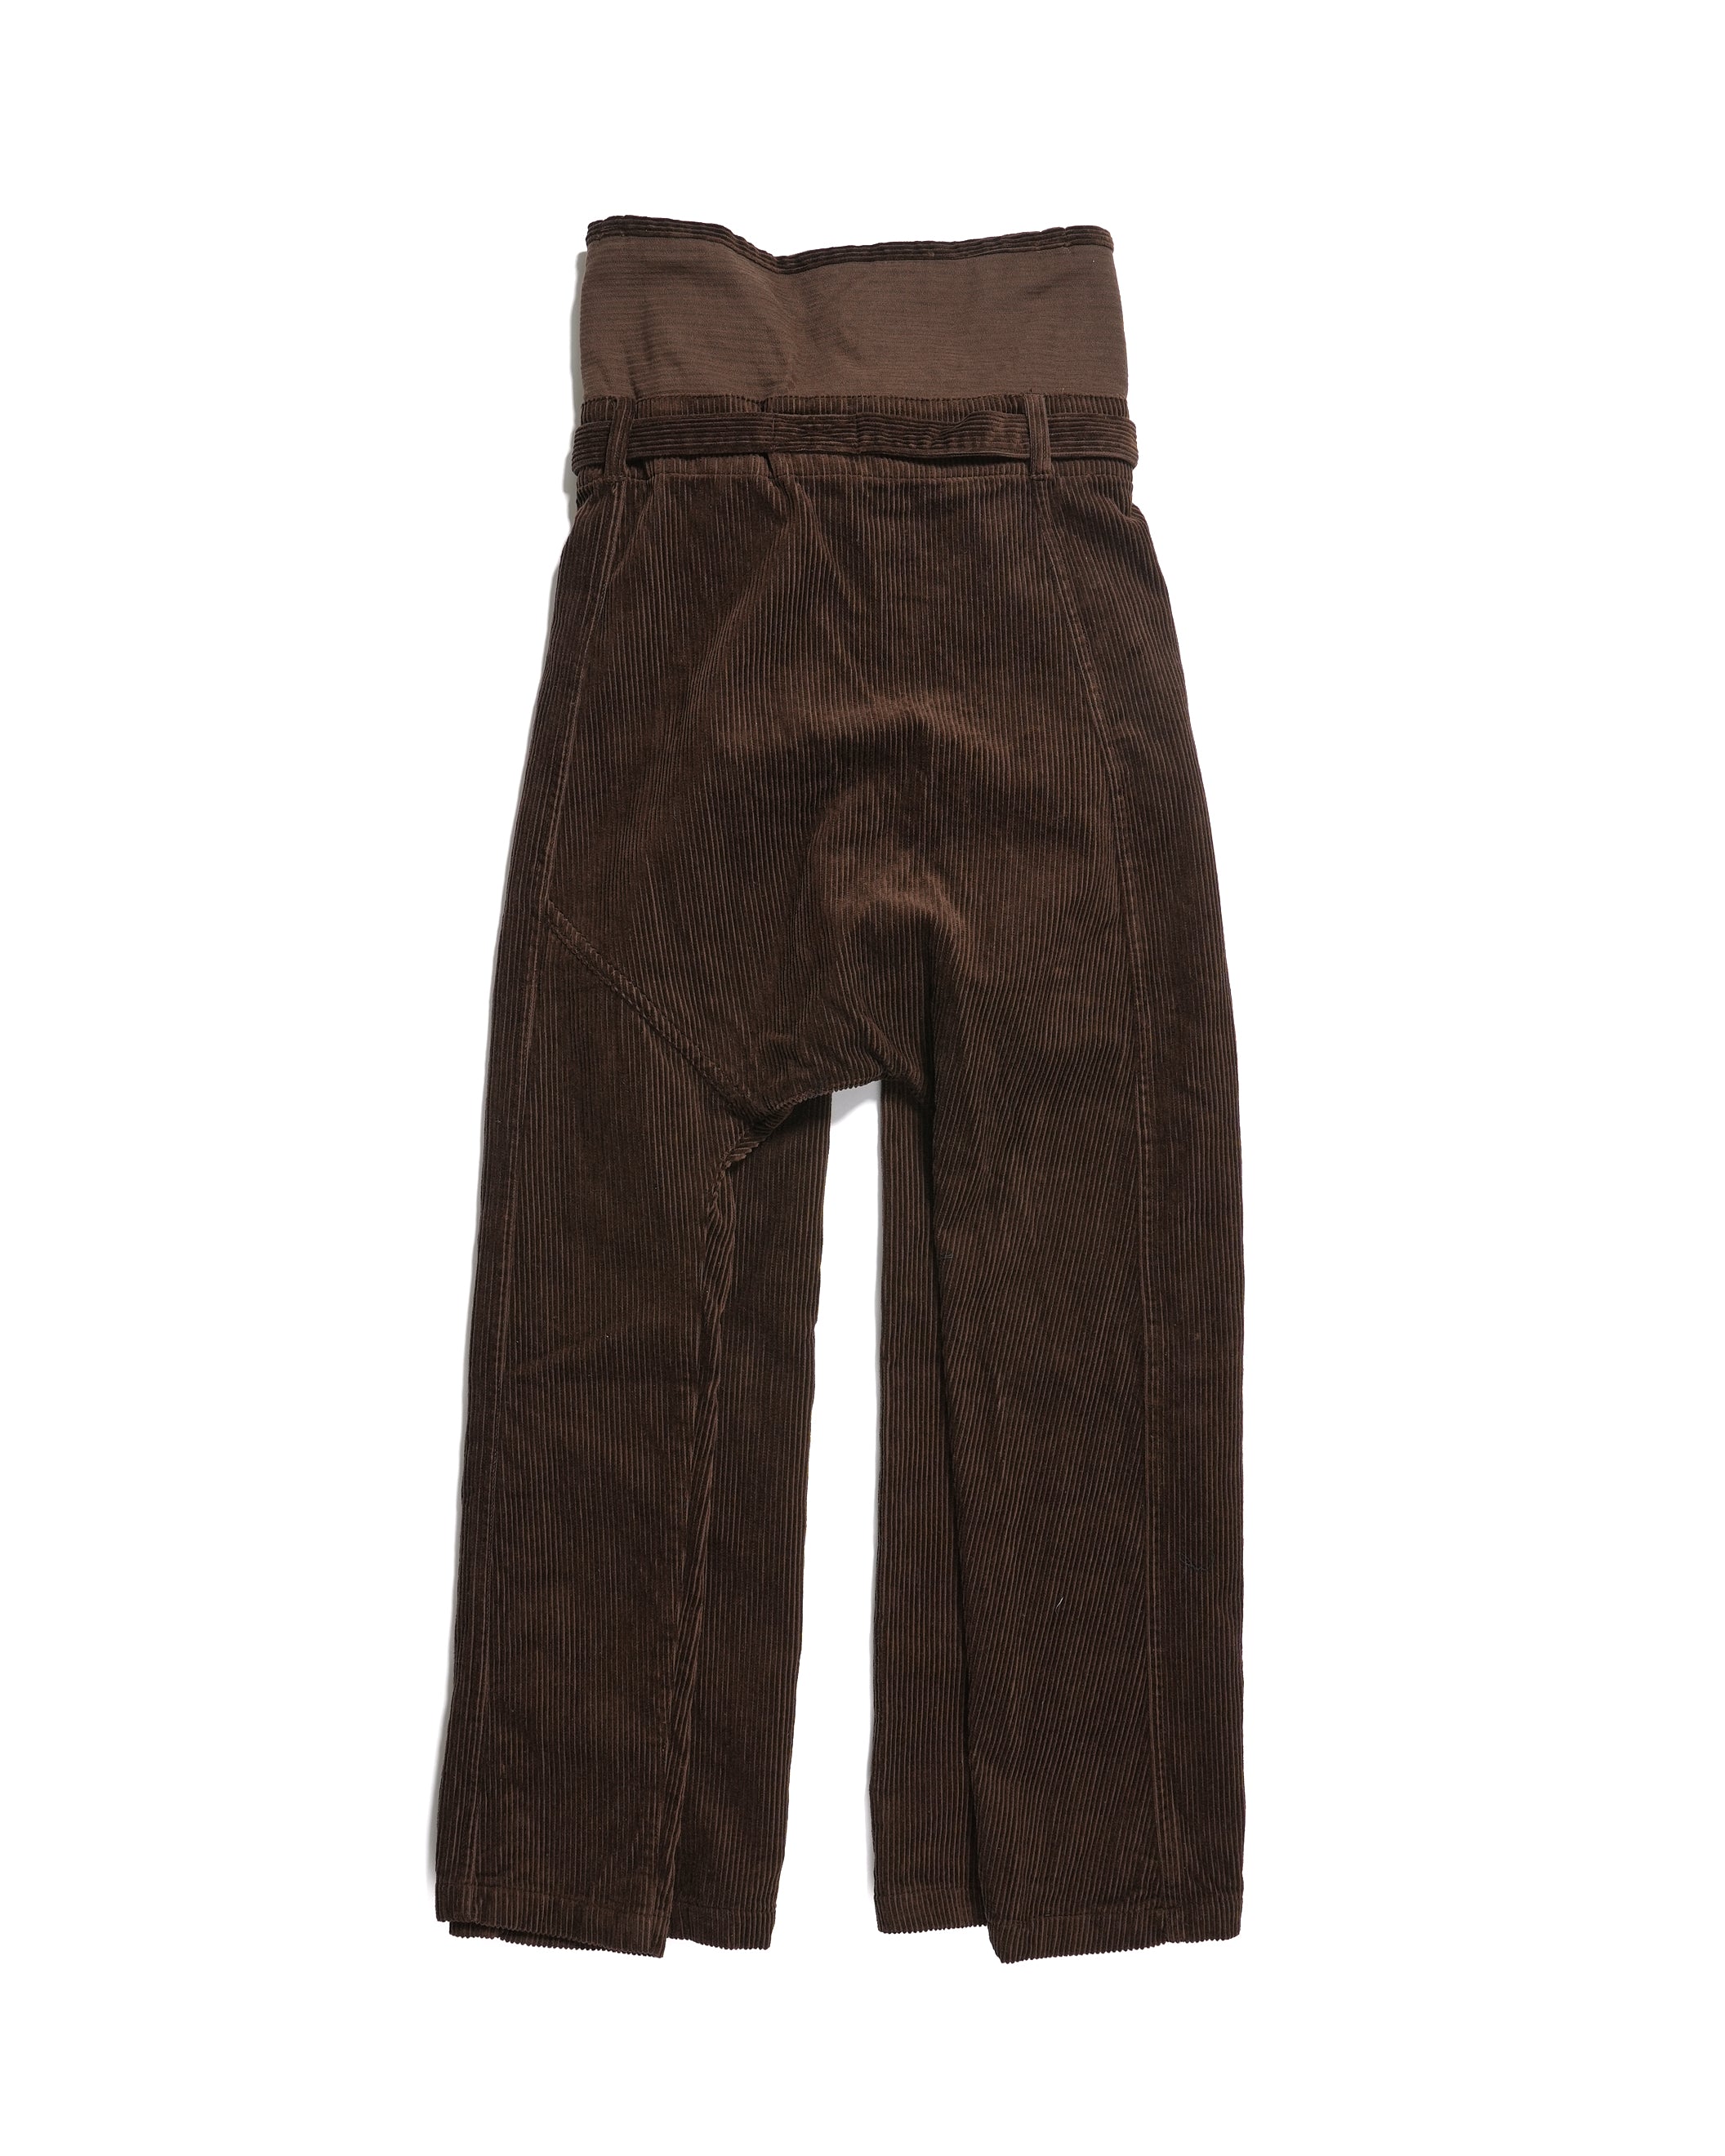 Fisherman Pant - Brown Cotton 8W Corduroy - NNY SP